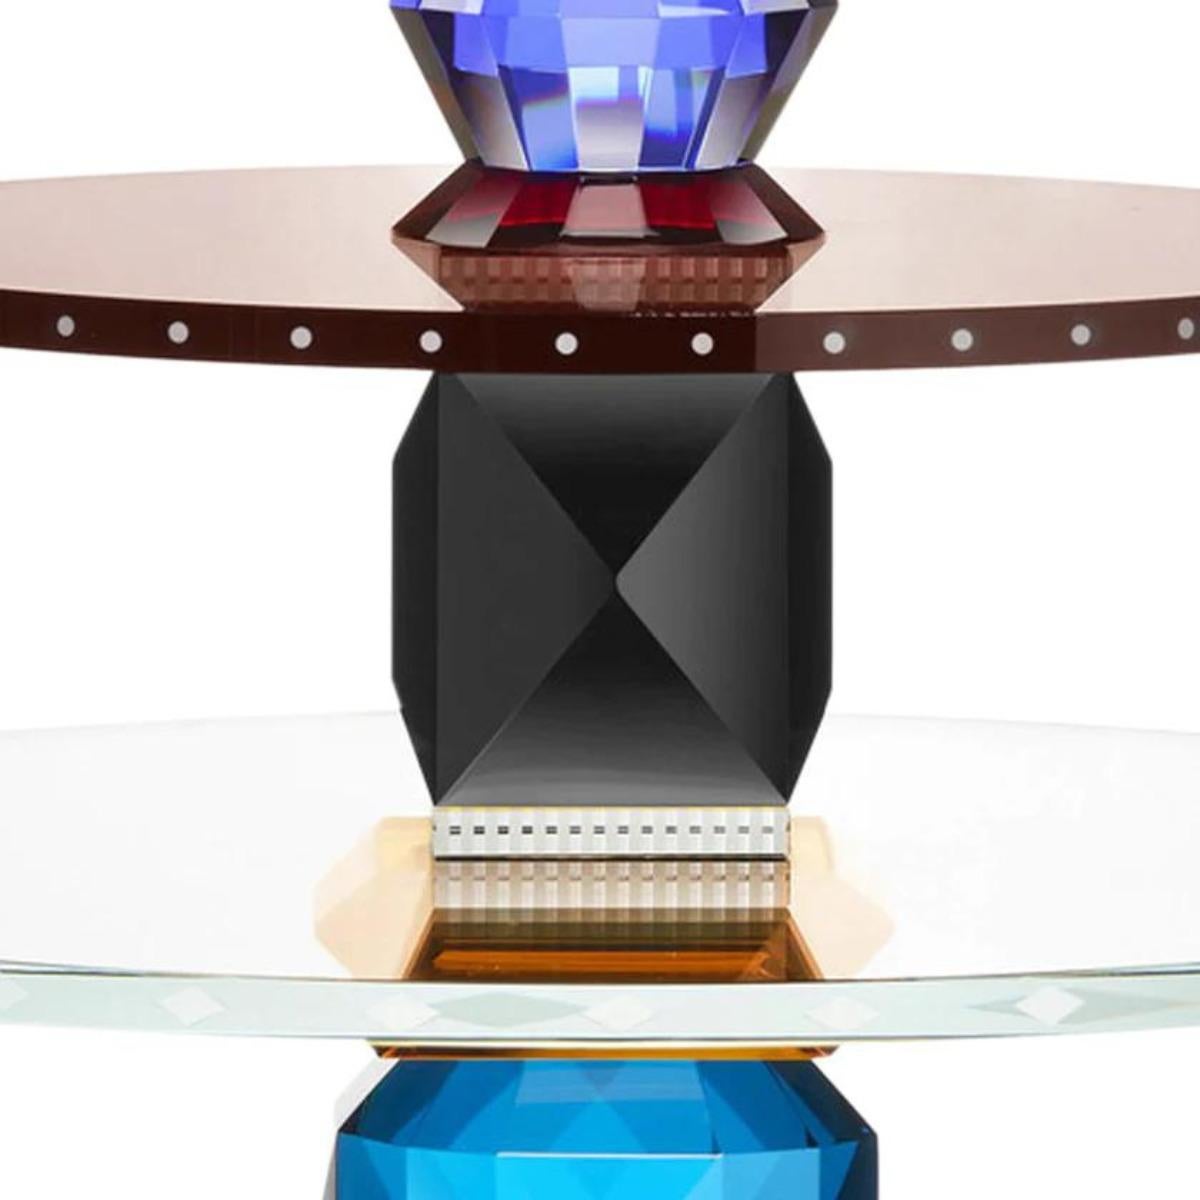 Dreistöckiges rundes Kristalltablett, Modell OMA, 21. Jahrhundert.

Farbiges rundes Tablett mit drei Ebenen. Ein gut gewähltes Tablett ist nicht nur funktional, sondern auch visuell interessant und schafft eine ausgewogene Komposition, die das